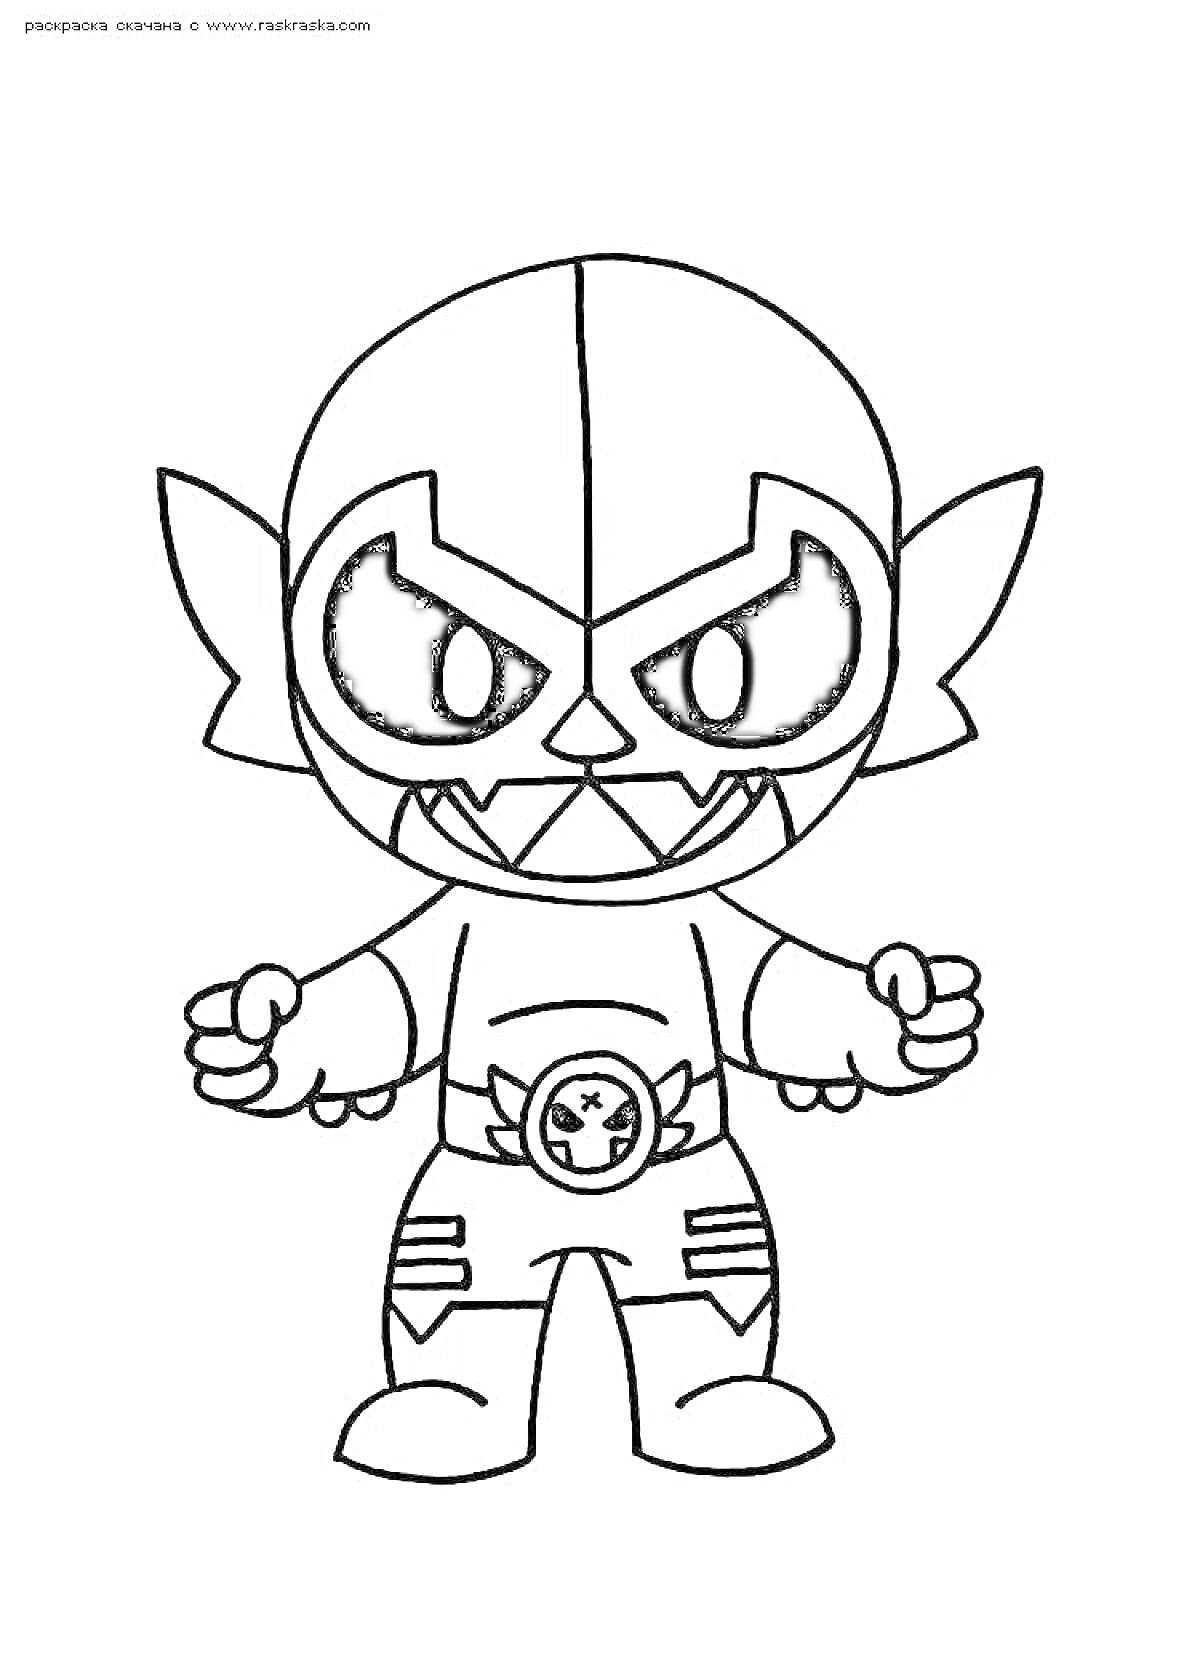 Раскраска Эль Примо в костюме Мишки из игры Браво Старс, стоящий с поднятыми кулаками